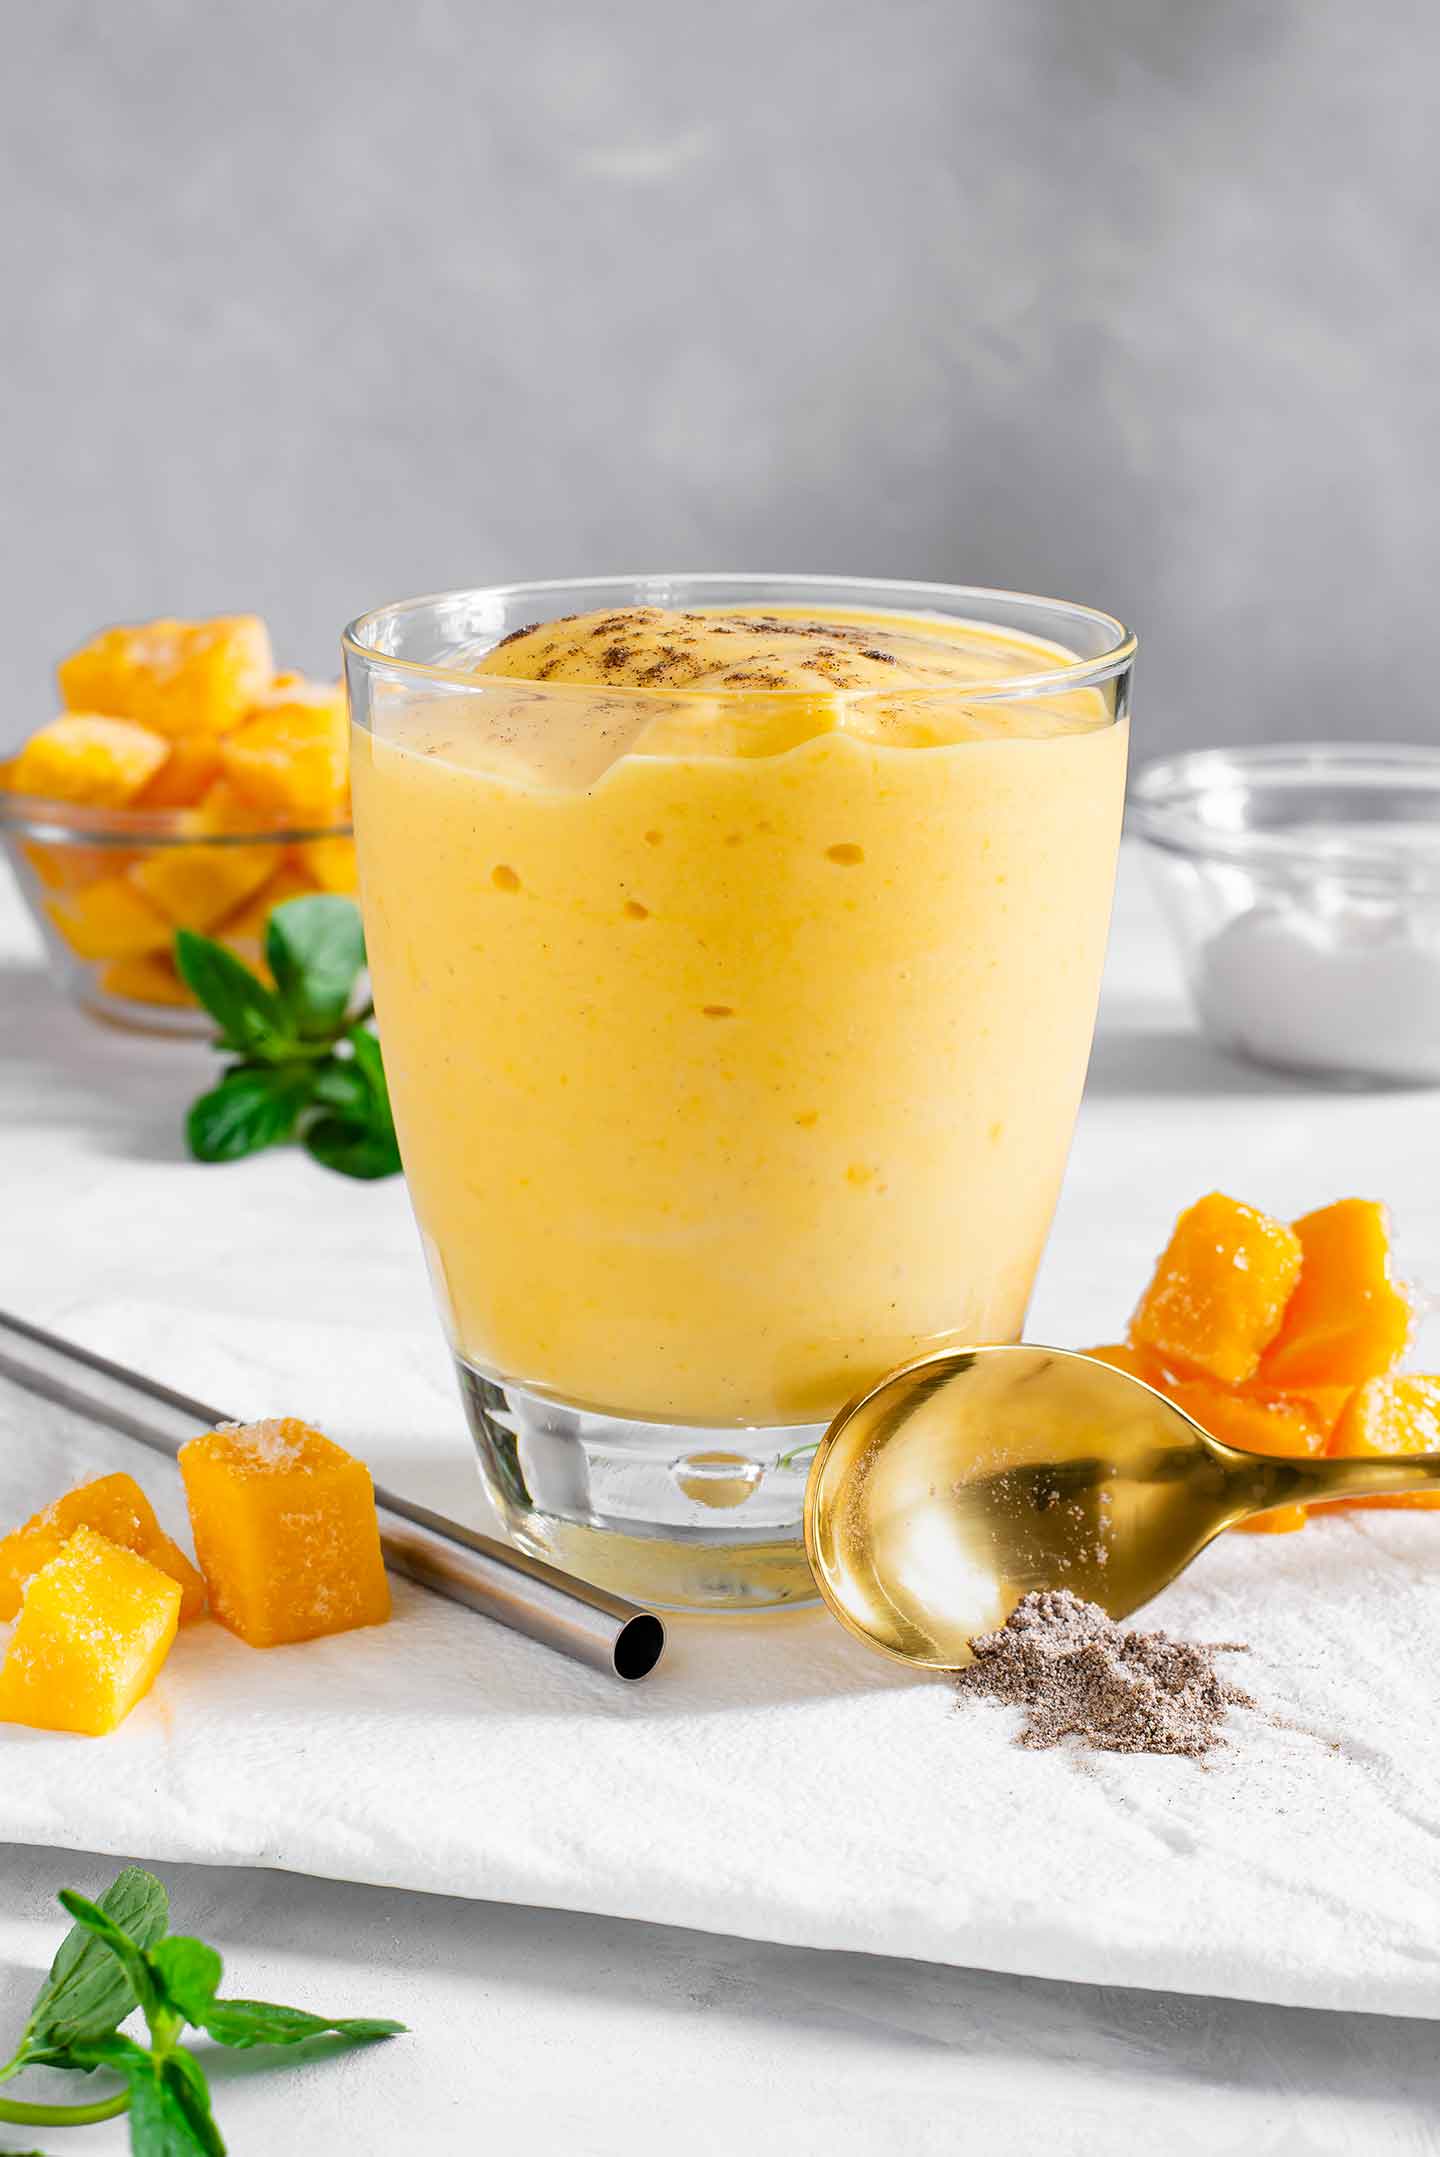 Best Mango Lassi Recipe - How To Make Mango Lassi